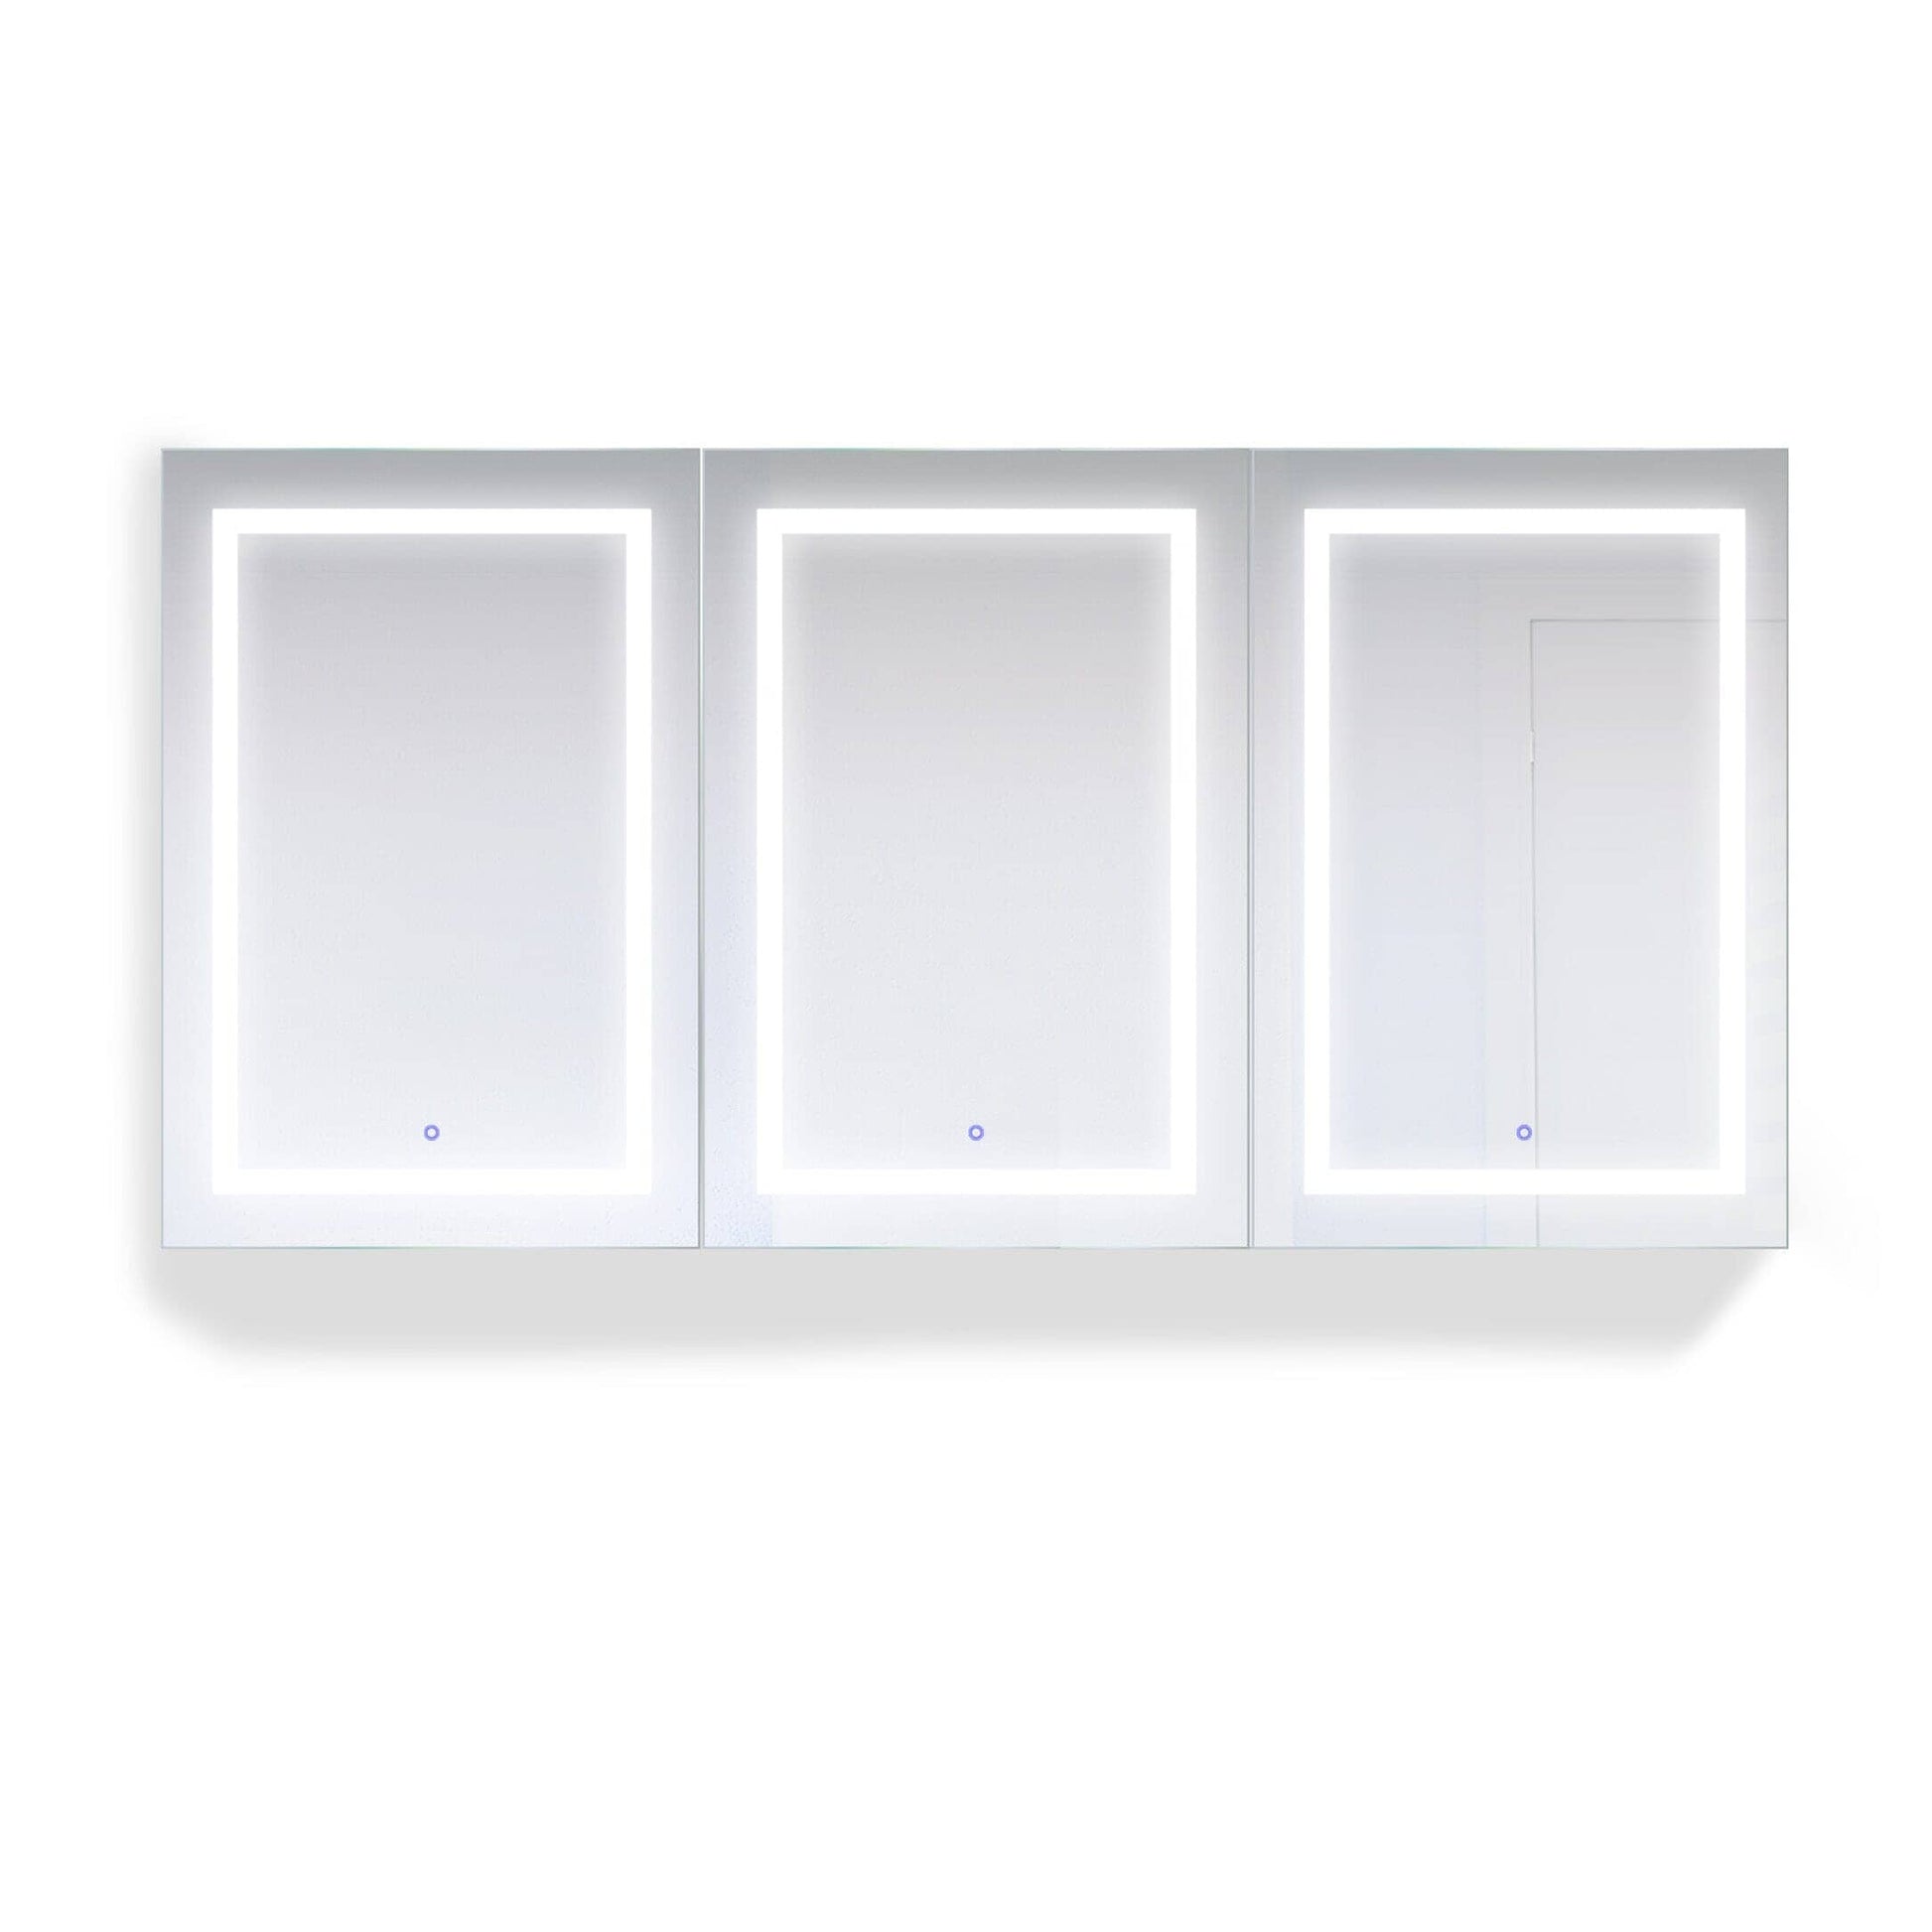 Medicine Cabinet - Krugg LED 72W x 36H - SVANGE7236TLRR